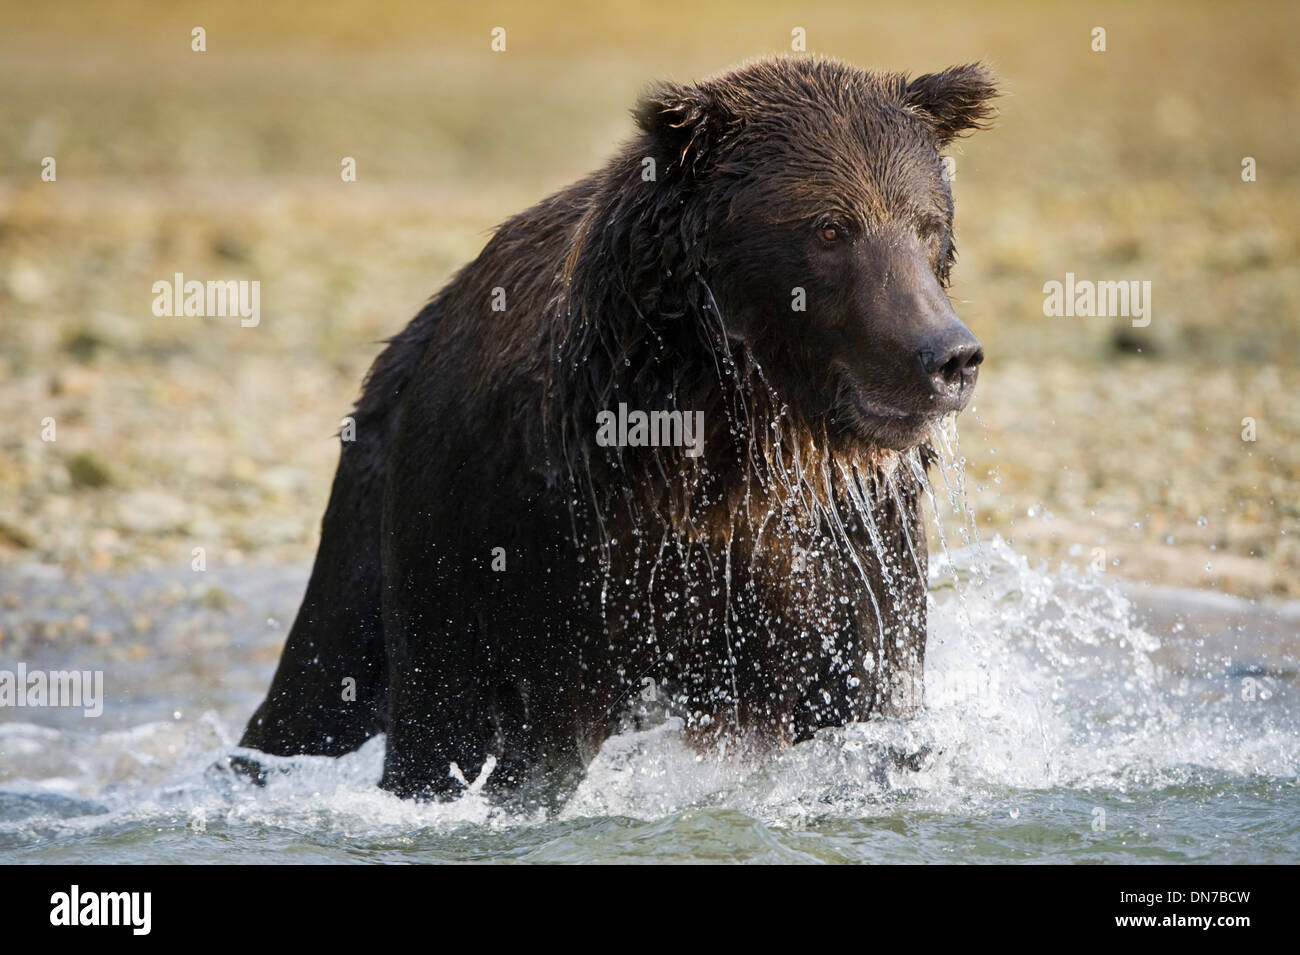 Grizzly bear (Ursus arctos) fishing in river, up close, Katmai national park, Alaska, USA. Stock Photo